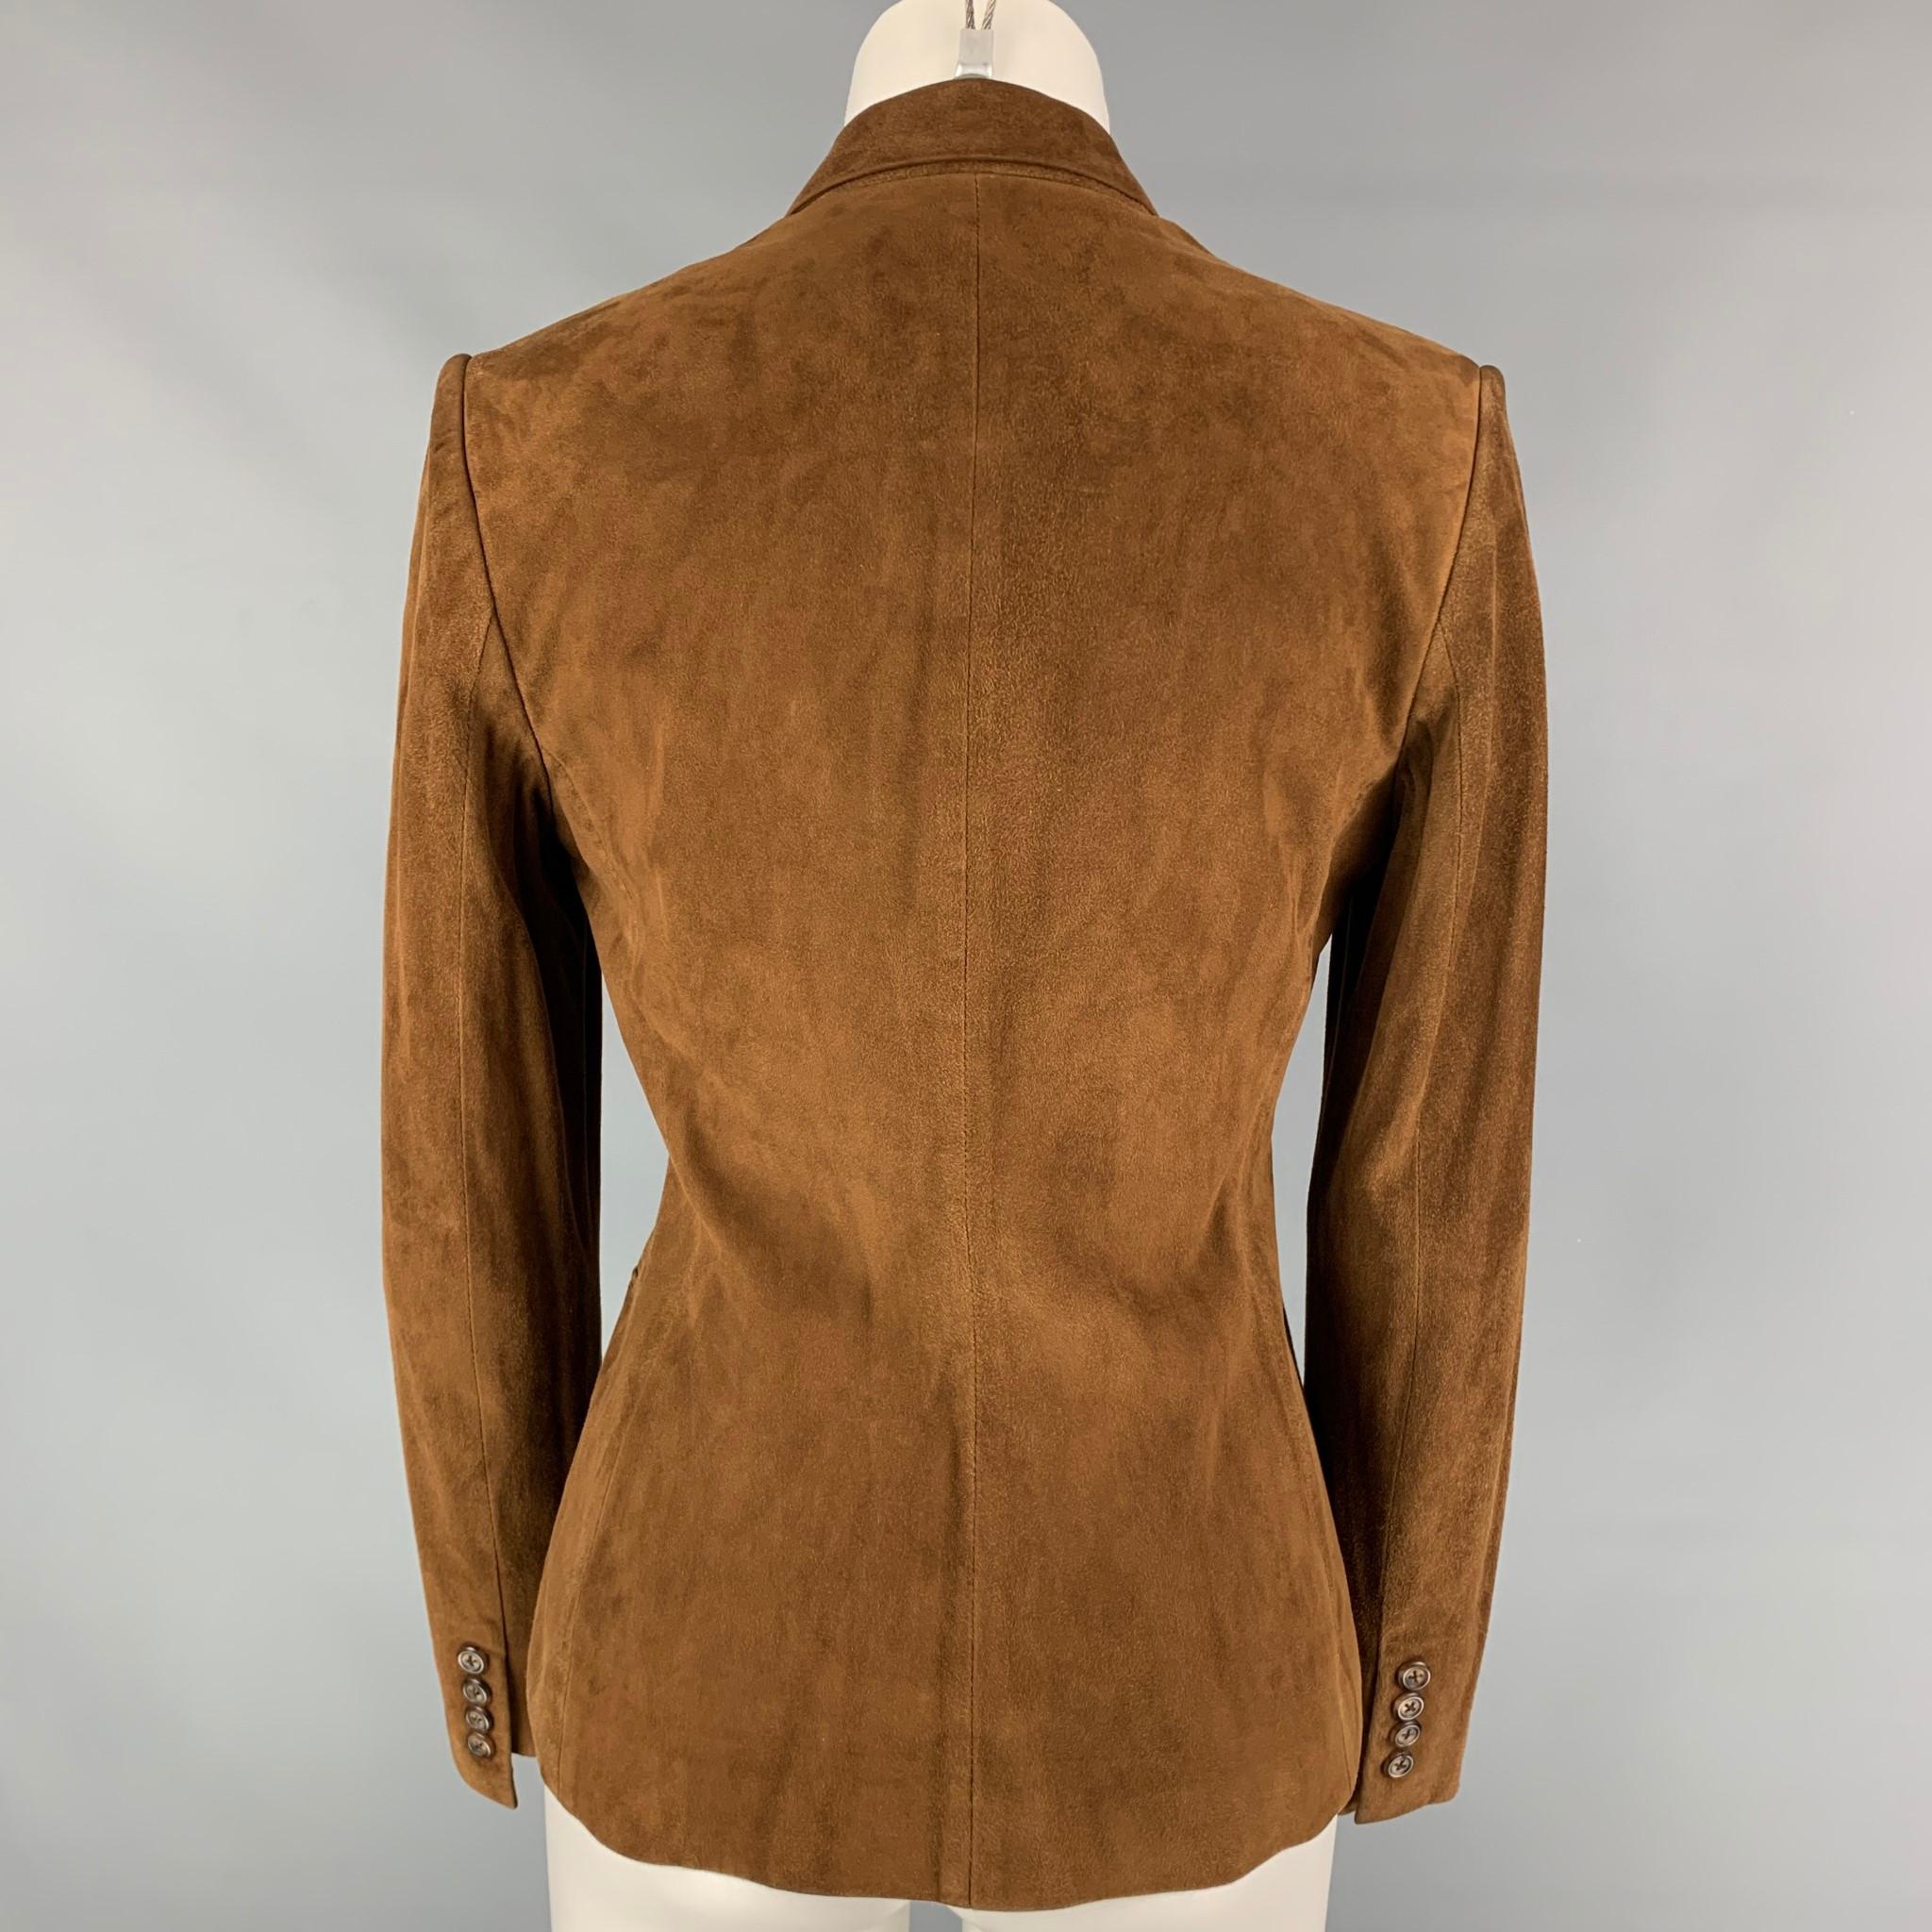 ralph lauren brown suede jacket